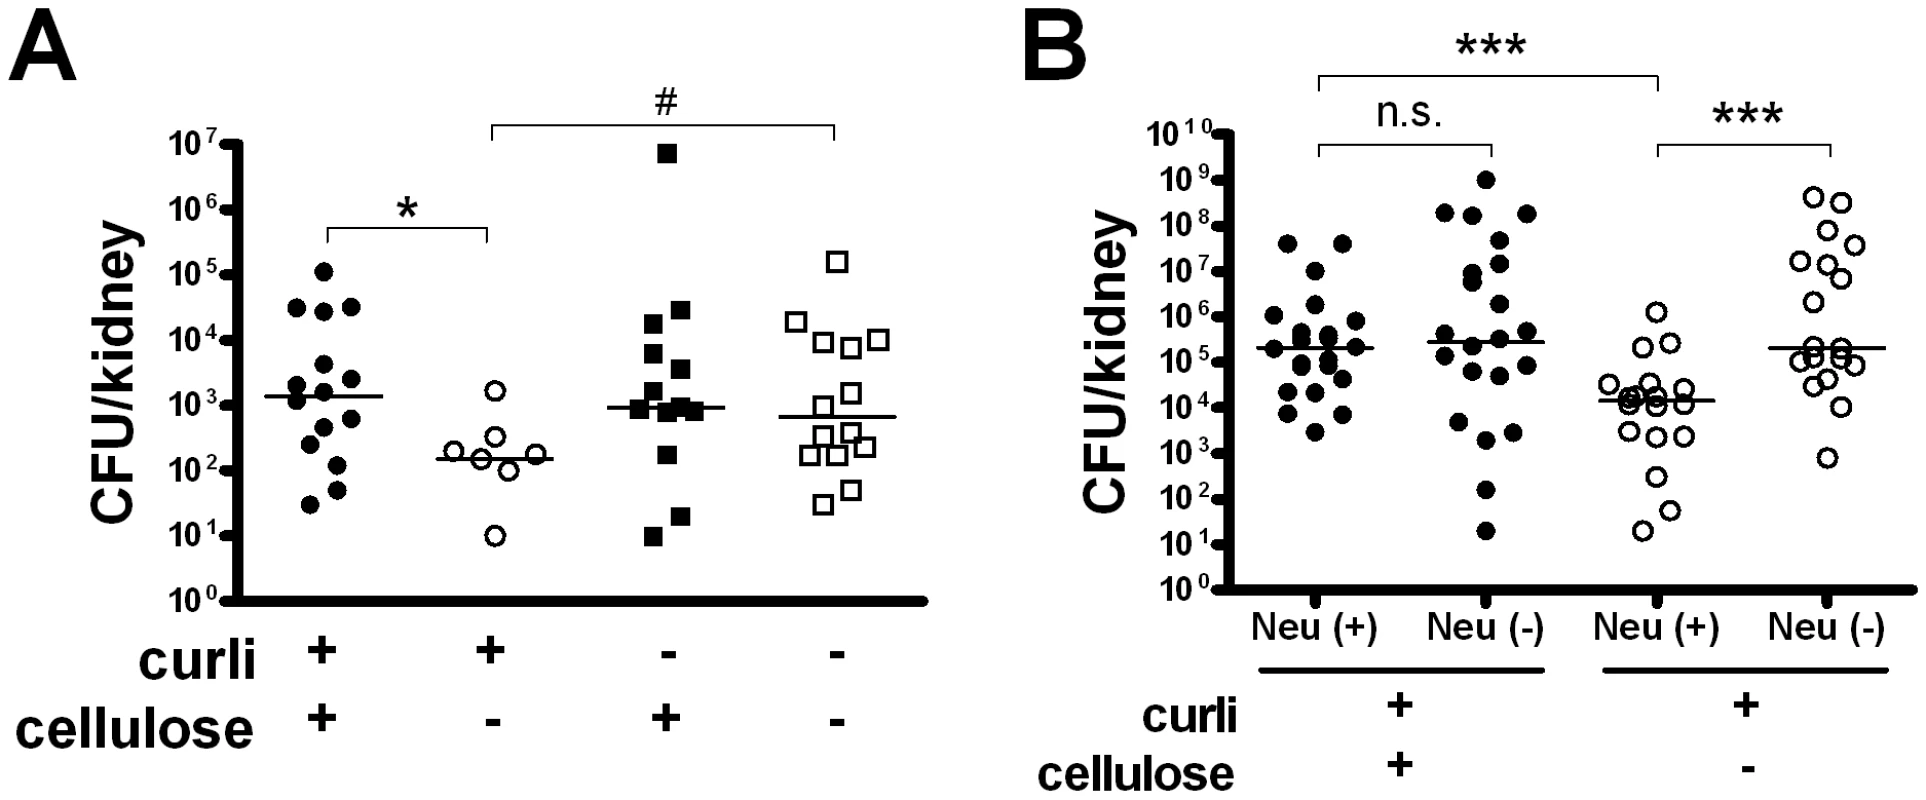 Cellulose delays bacterial elimination in vivo.